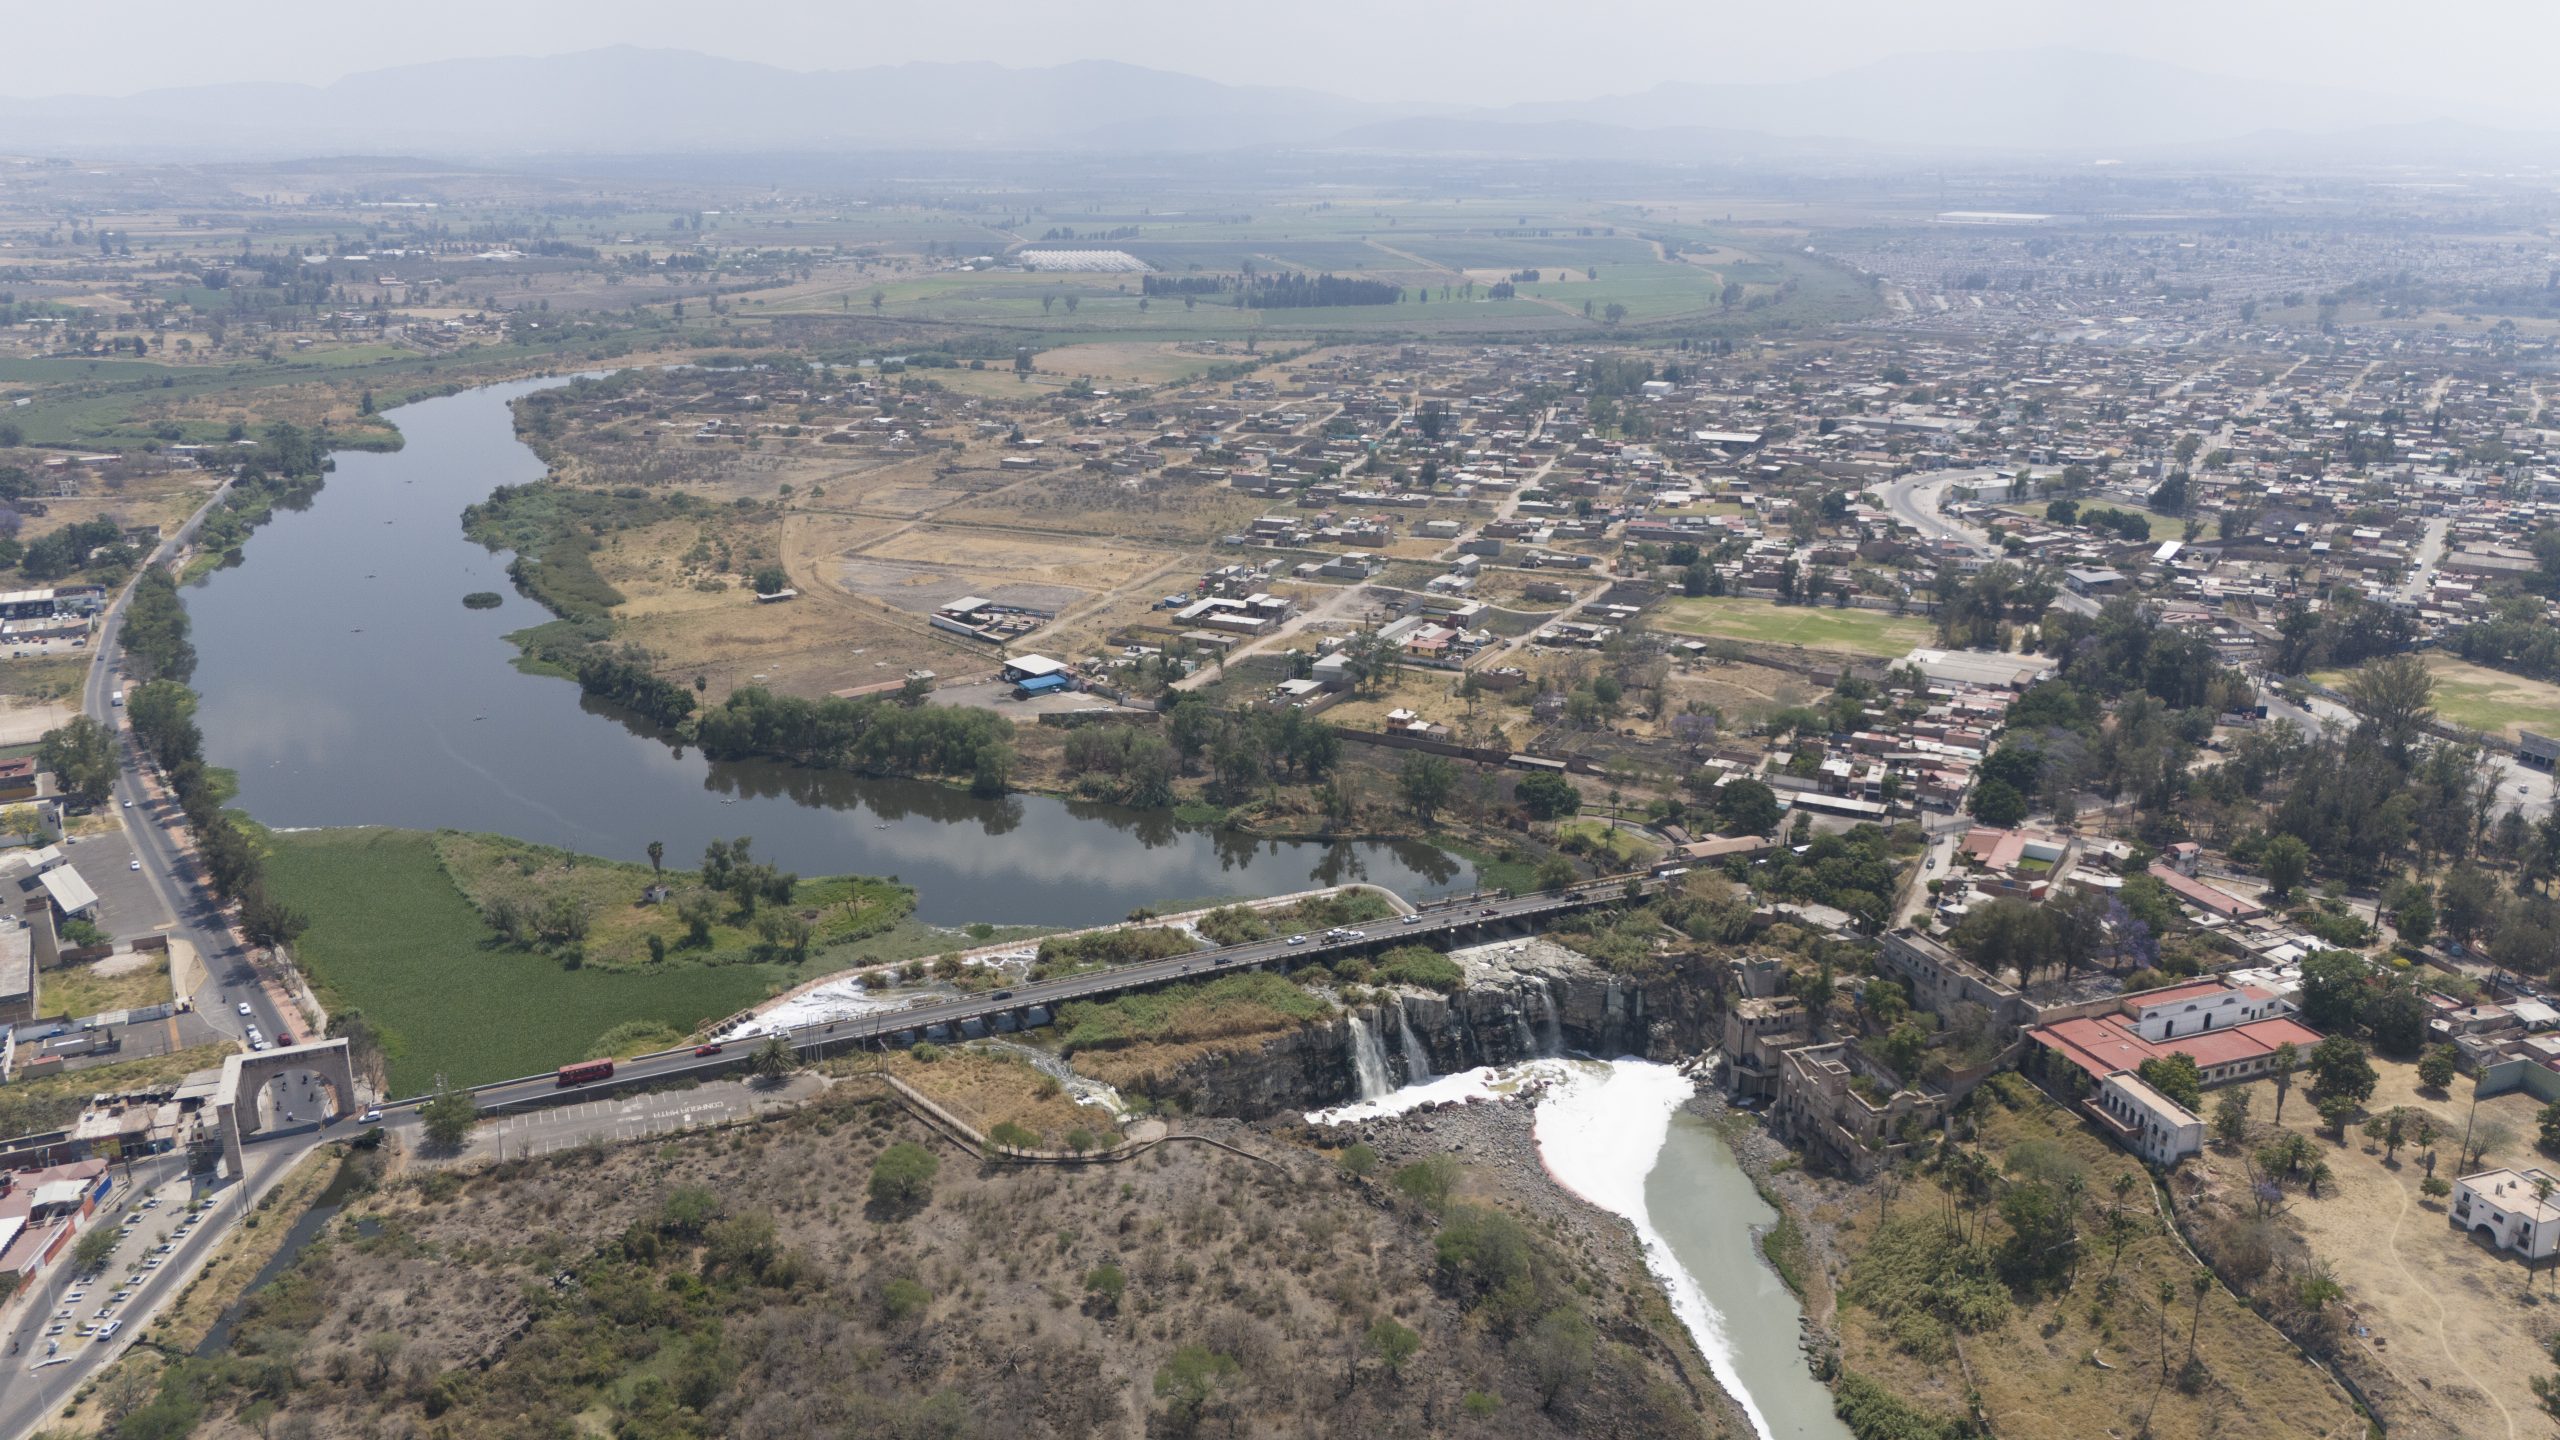 Río Santiago en la división de los municipios de Juanacatlán y El Salto, visto desde las alturas. Fotografia: Leopoldo Garnica